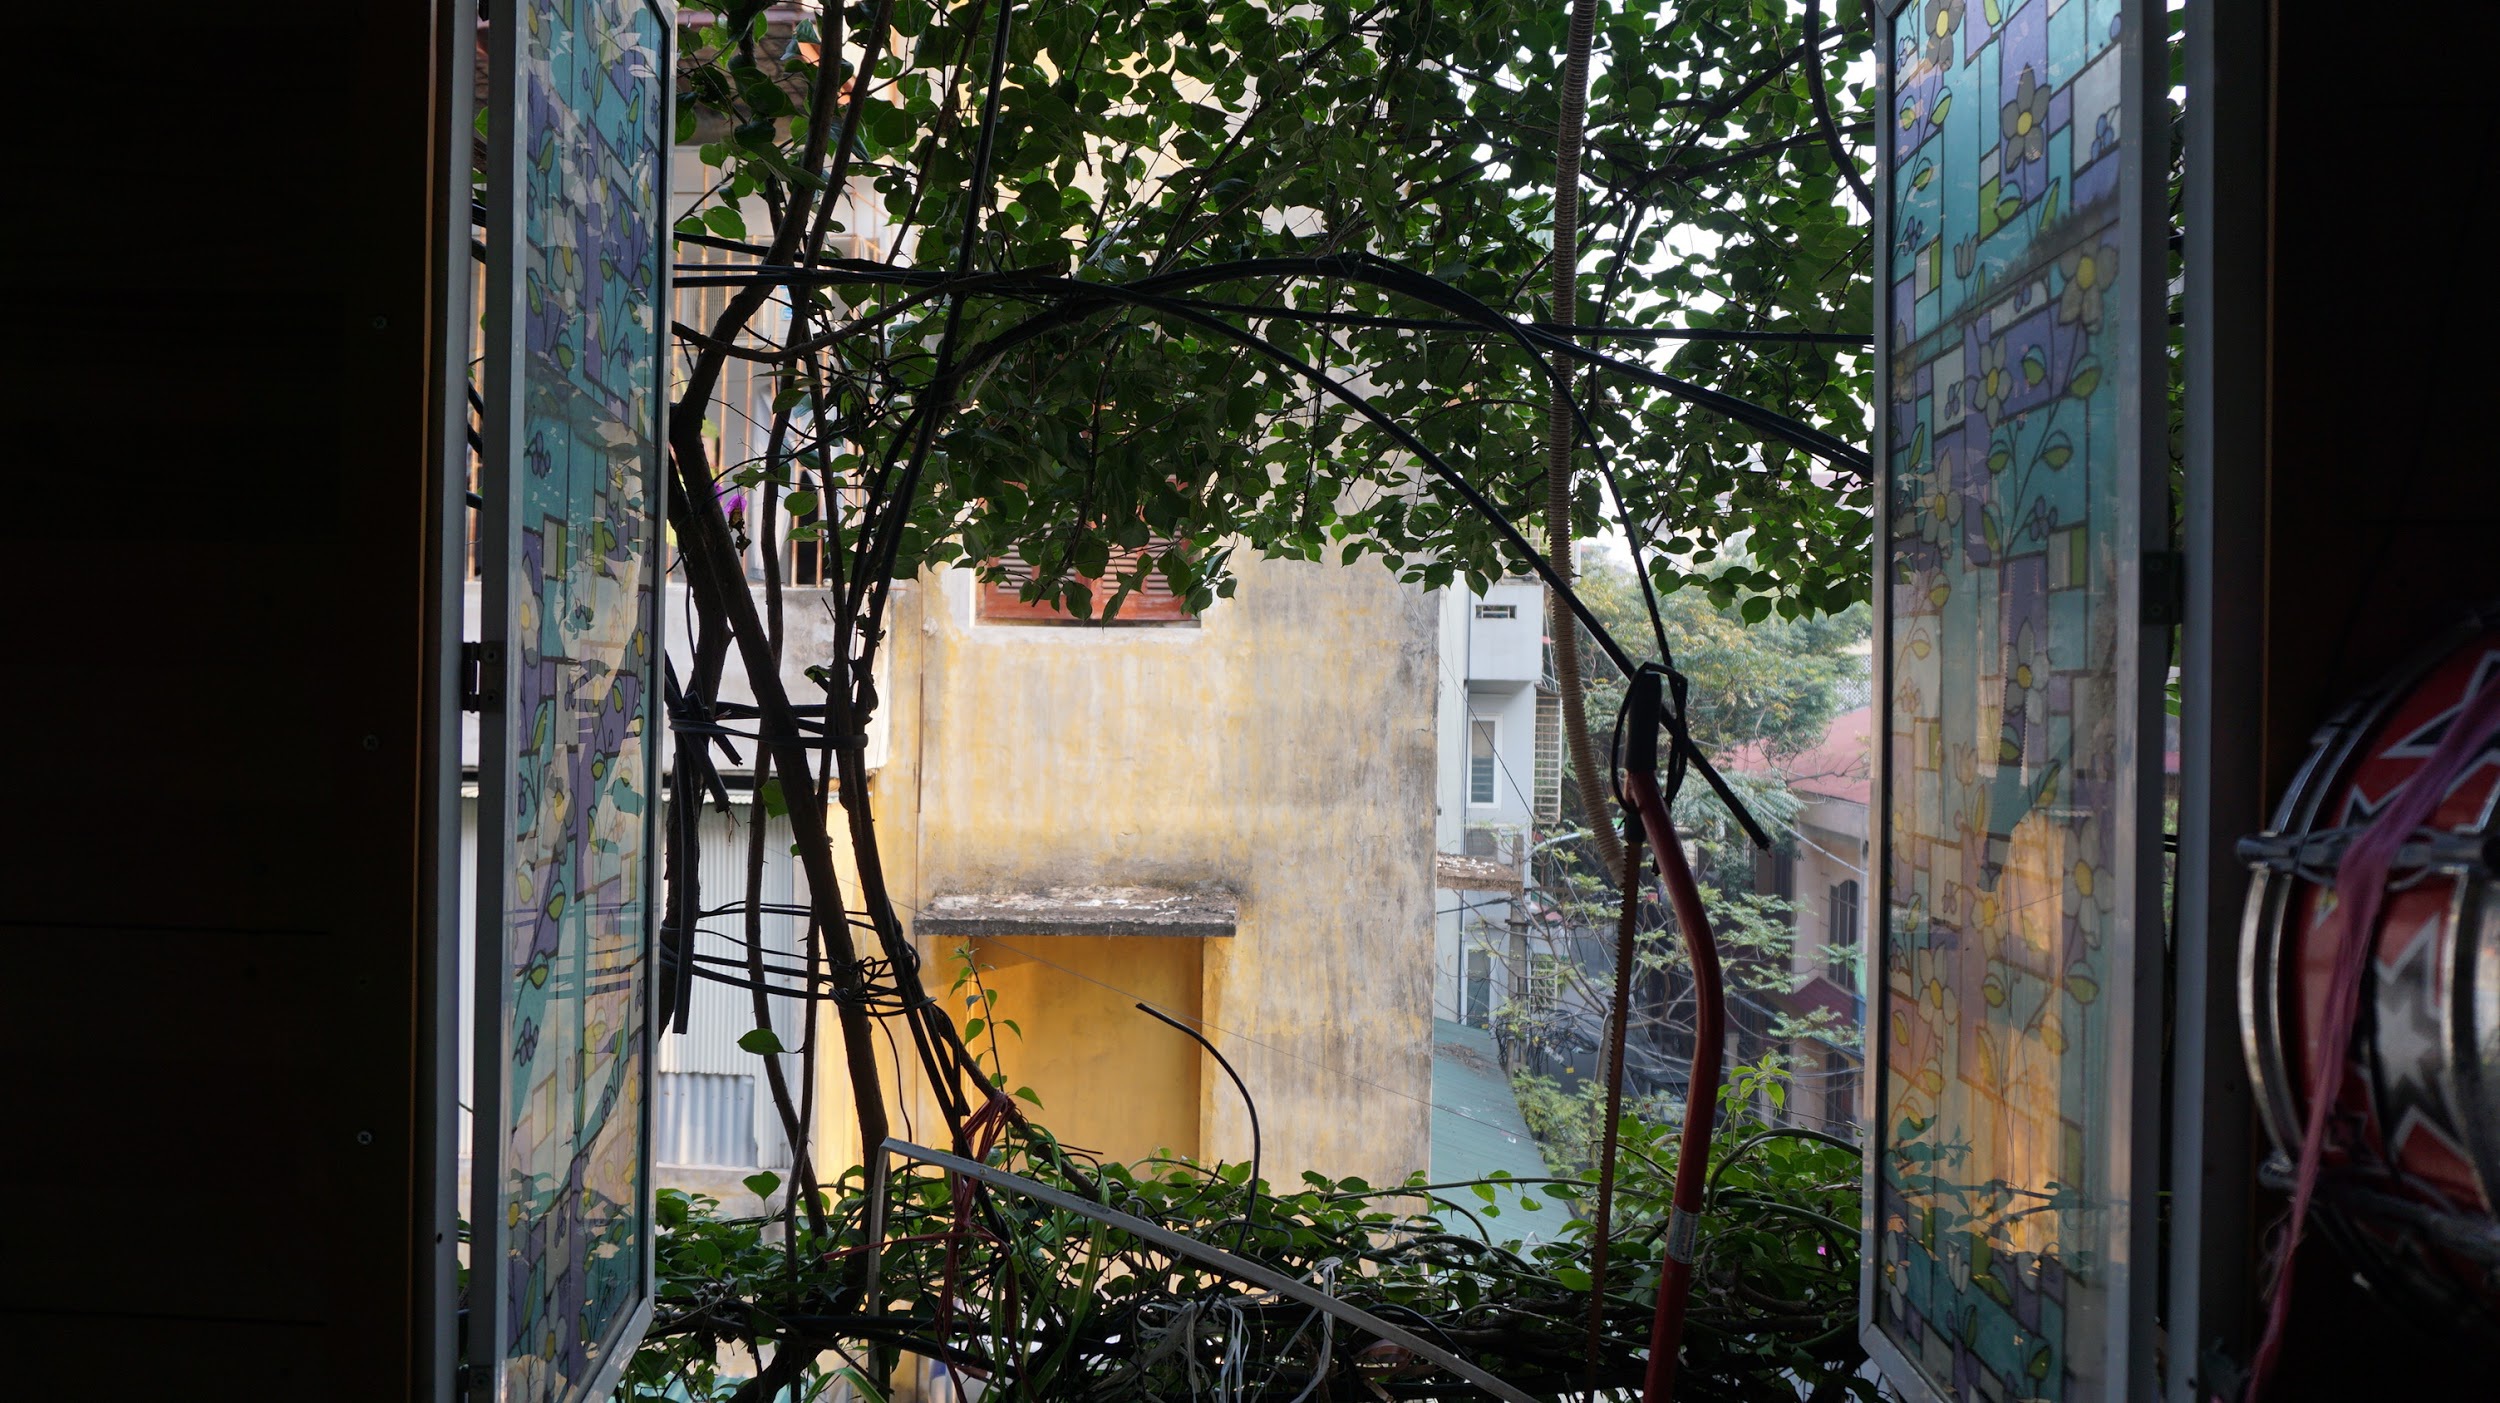 Nhà cây 5 tầng phủ kín hoa giấy ở Hà Nội, ai đi qua cũng dừng lại ngắm - 13